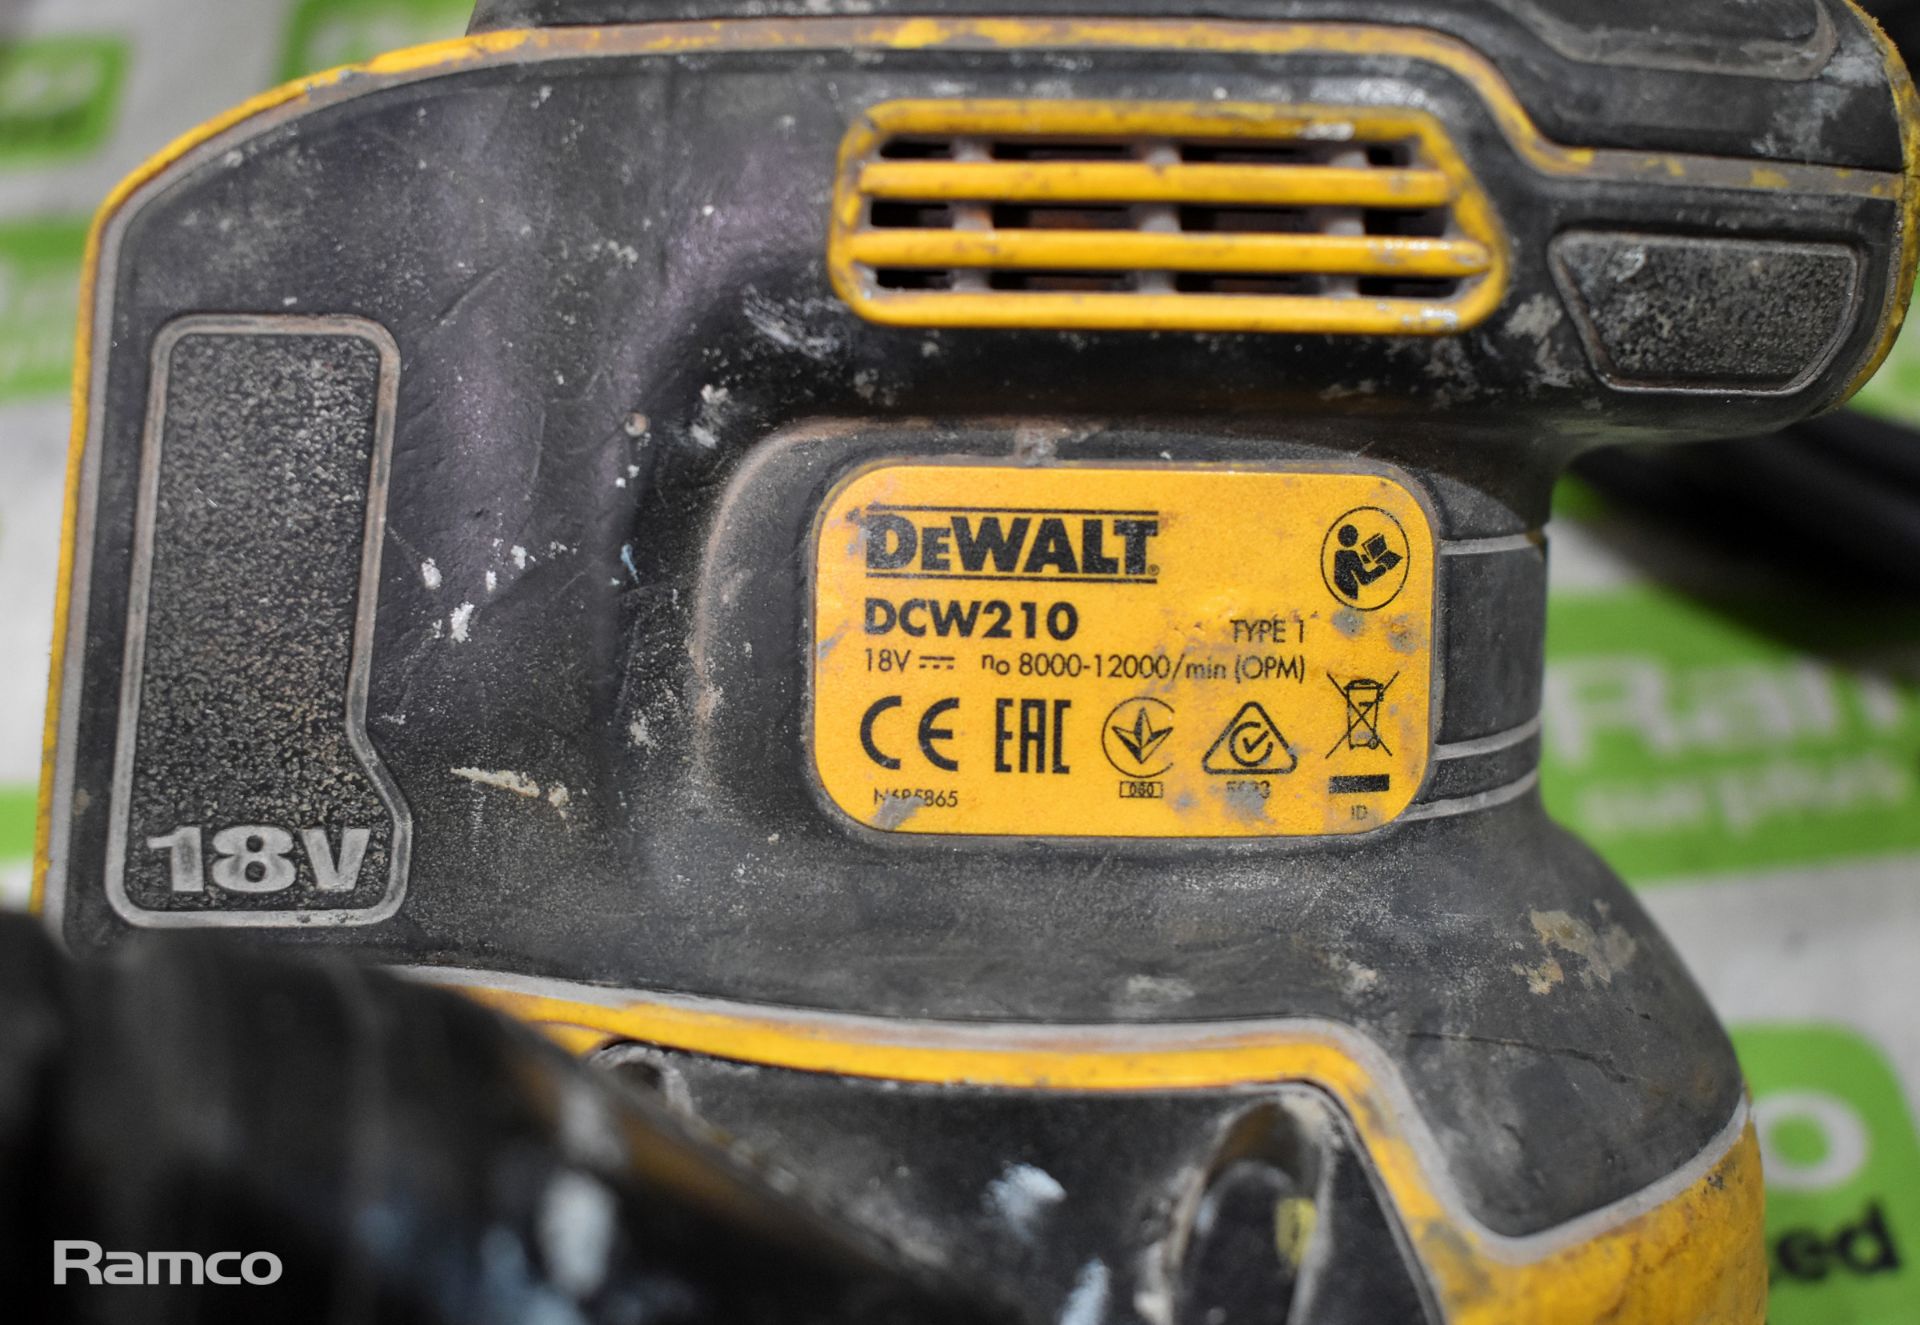 Dewalt DCW210 18V cordless variable speed palm sander - UNIT ONLY, Dewalt DWE492 240V angle grinder - Image 3 of 8